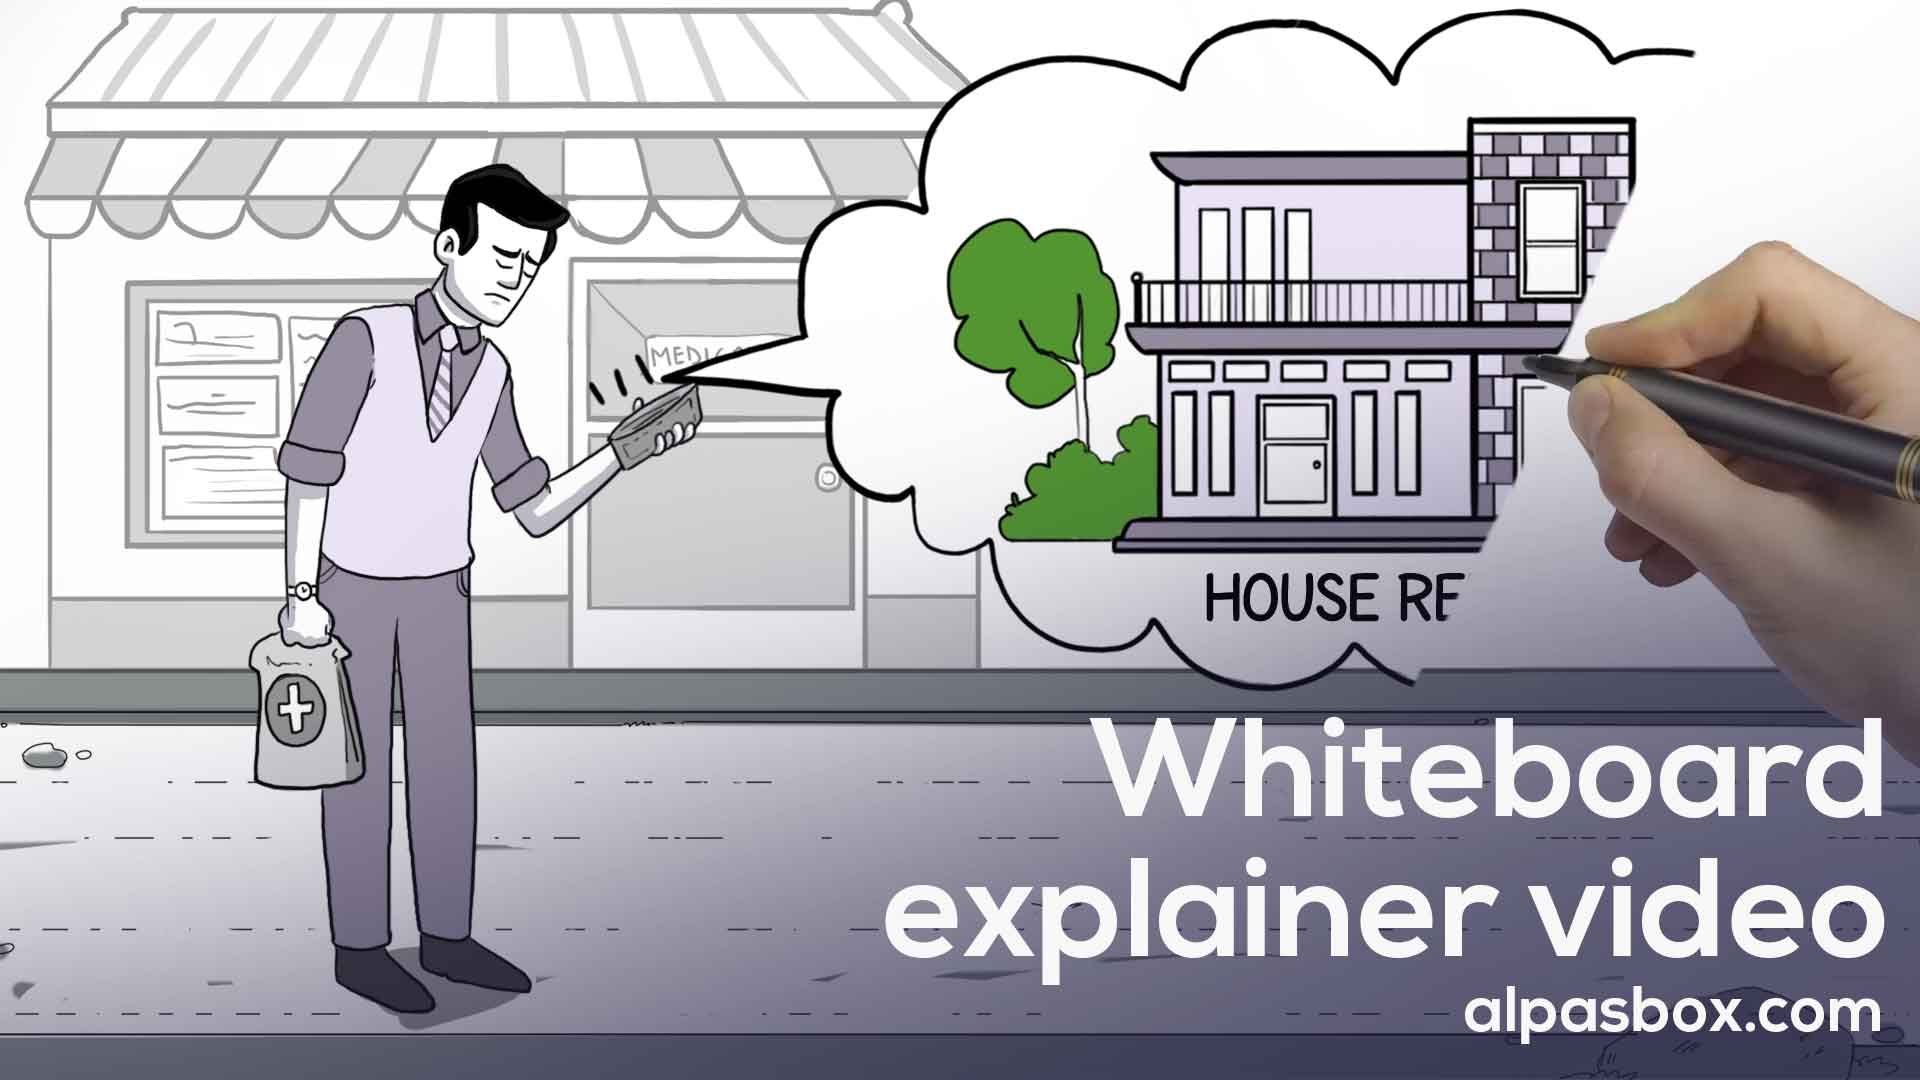 Best Explainer Video Whiteboard Video